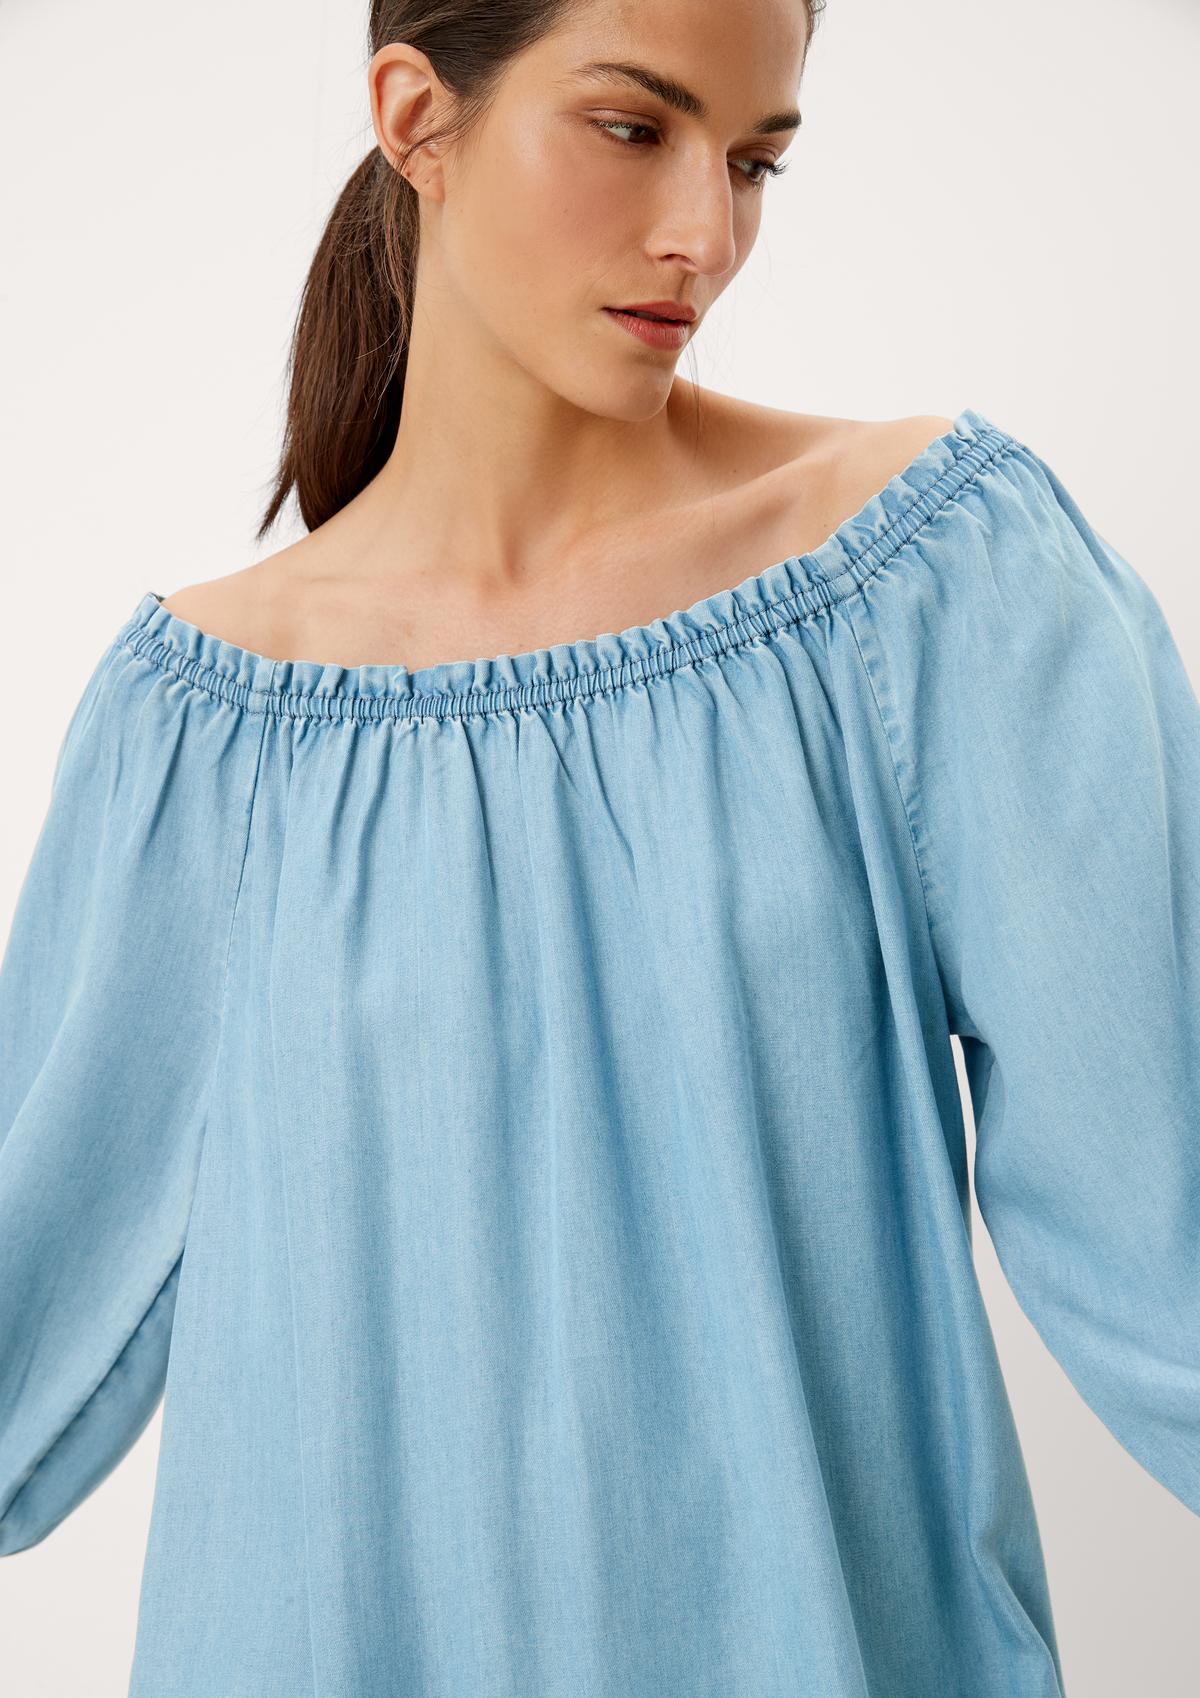 Frühlings-/Sommerschlussverkauf Midi-Kleid mit Rüschendetail blassblau 